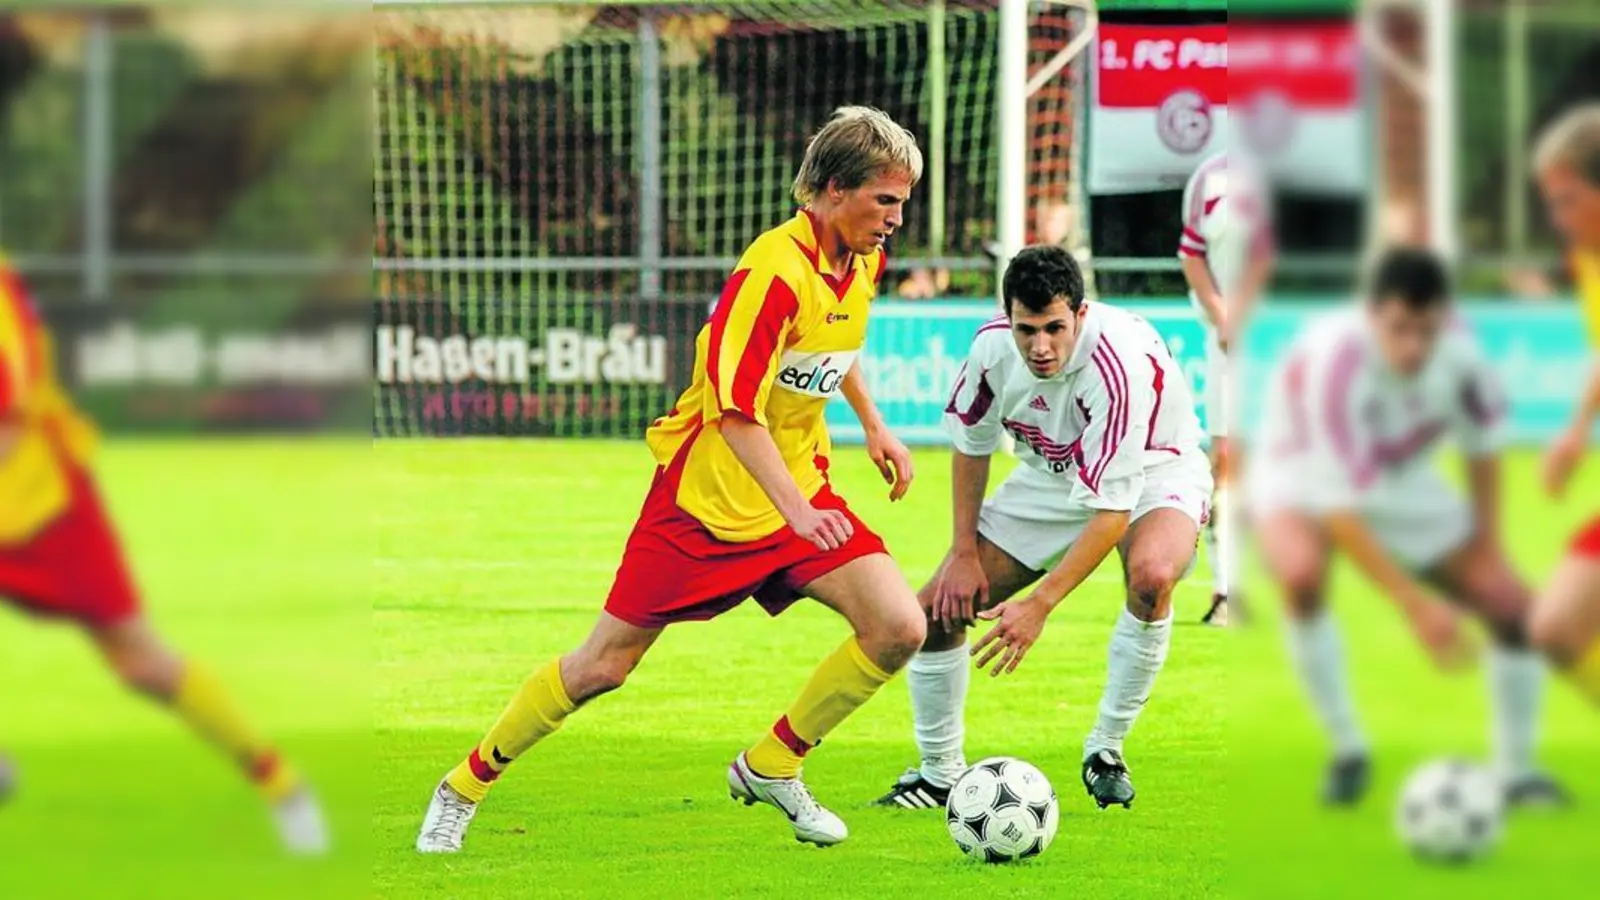 &lt;p&gt; &lt;x_bildunterschr&gt; &lt;b&gt;Der 16. BCA-Neuzugang Manuel Hiemer &lt;/b&gt; (links) spielte in der Saison 2005/06 für den Bayernligisten TSV Aindling, hier gegen einen gewissen 1. FC Passau. &lt;tab/&gt;Archivfoto: Siegfried Kerpf &lt;/x_bildunterschr&gt; &lt;/p&gt;